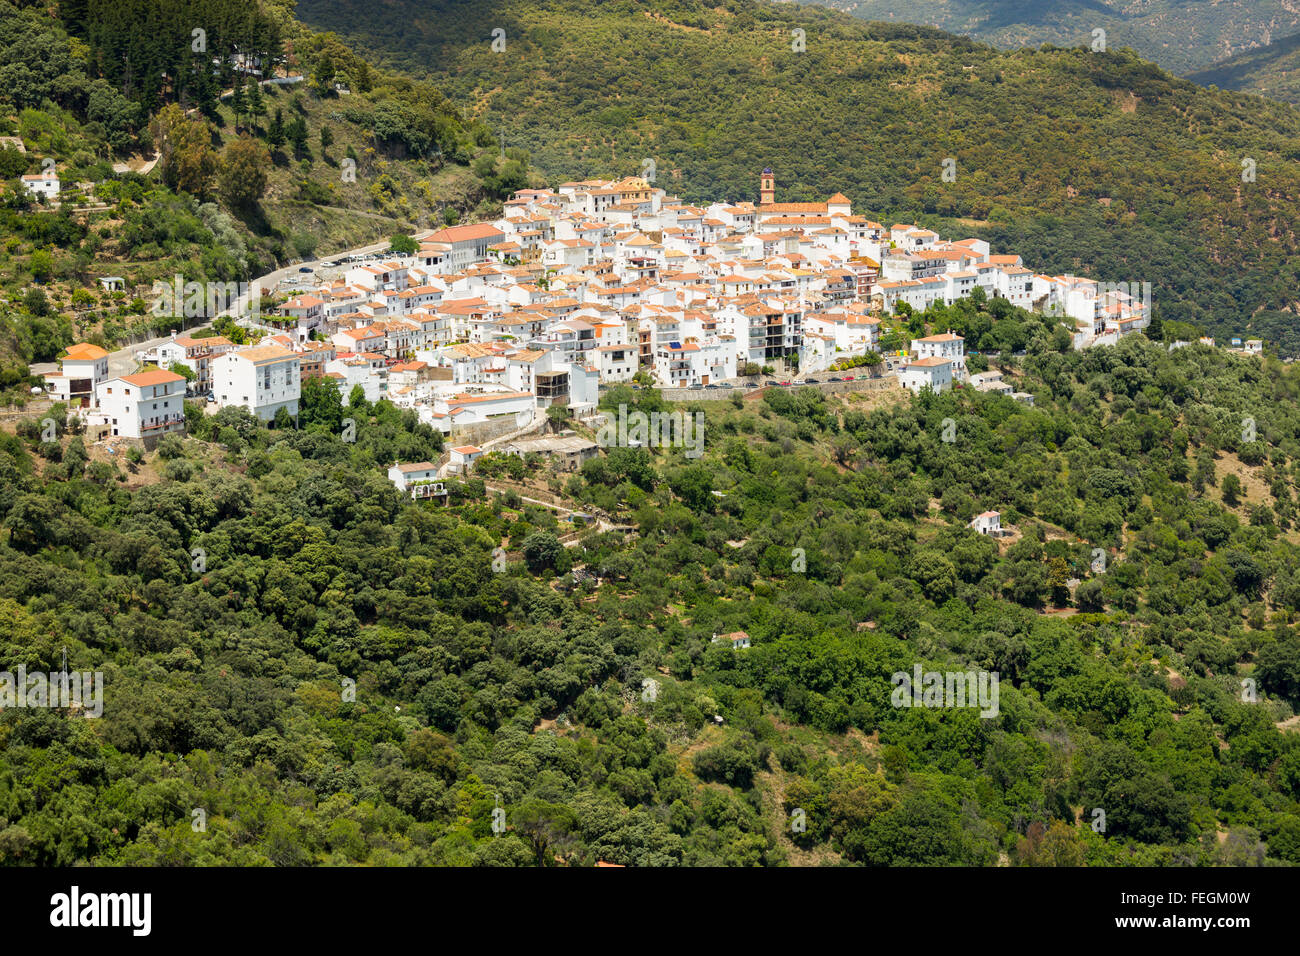 Andalusian village (Pueblos Blancos) in Sierra de las Nieves, Malaga, Spain Stock Photo